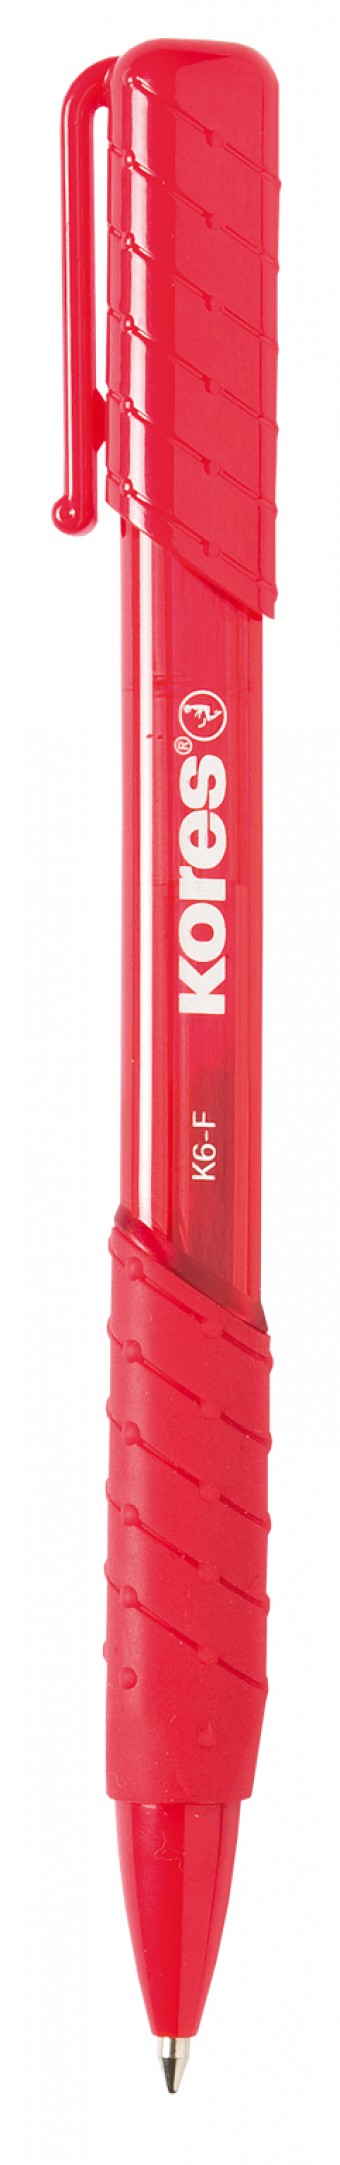 K6-F_red